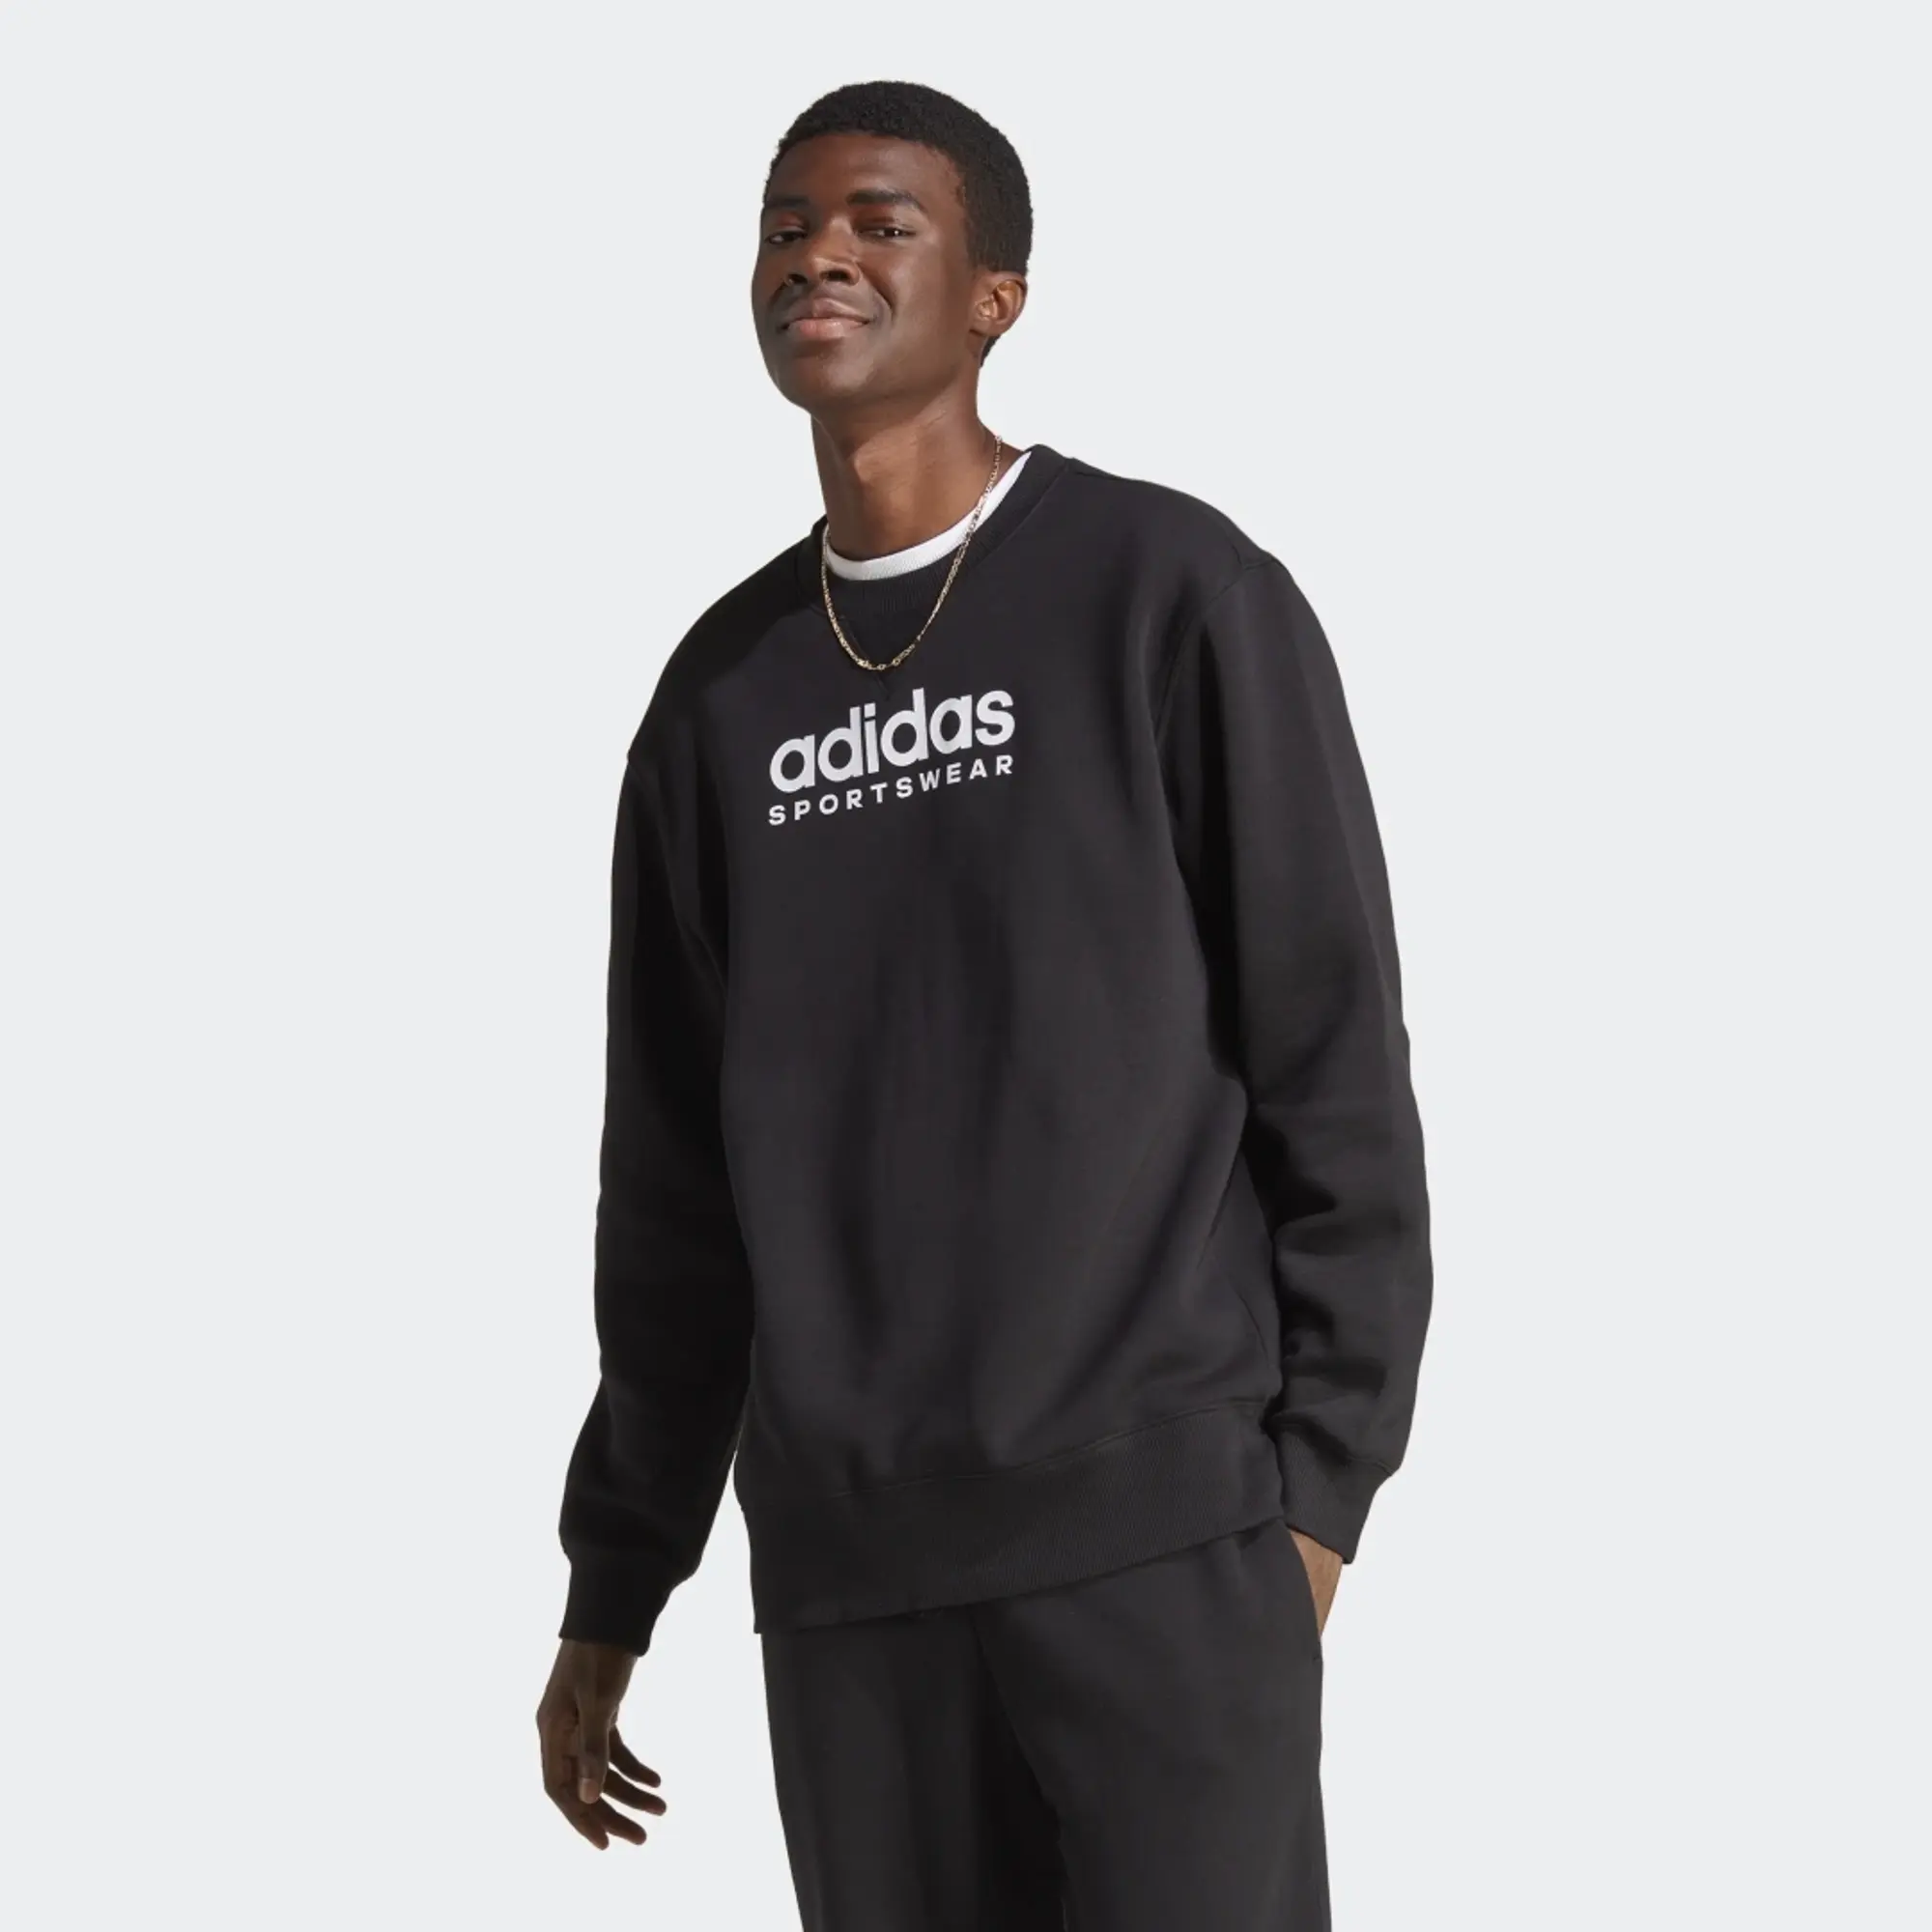 Adidas & Sweatshirts Jumpers